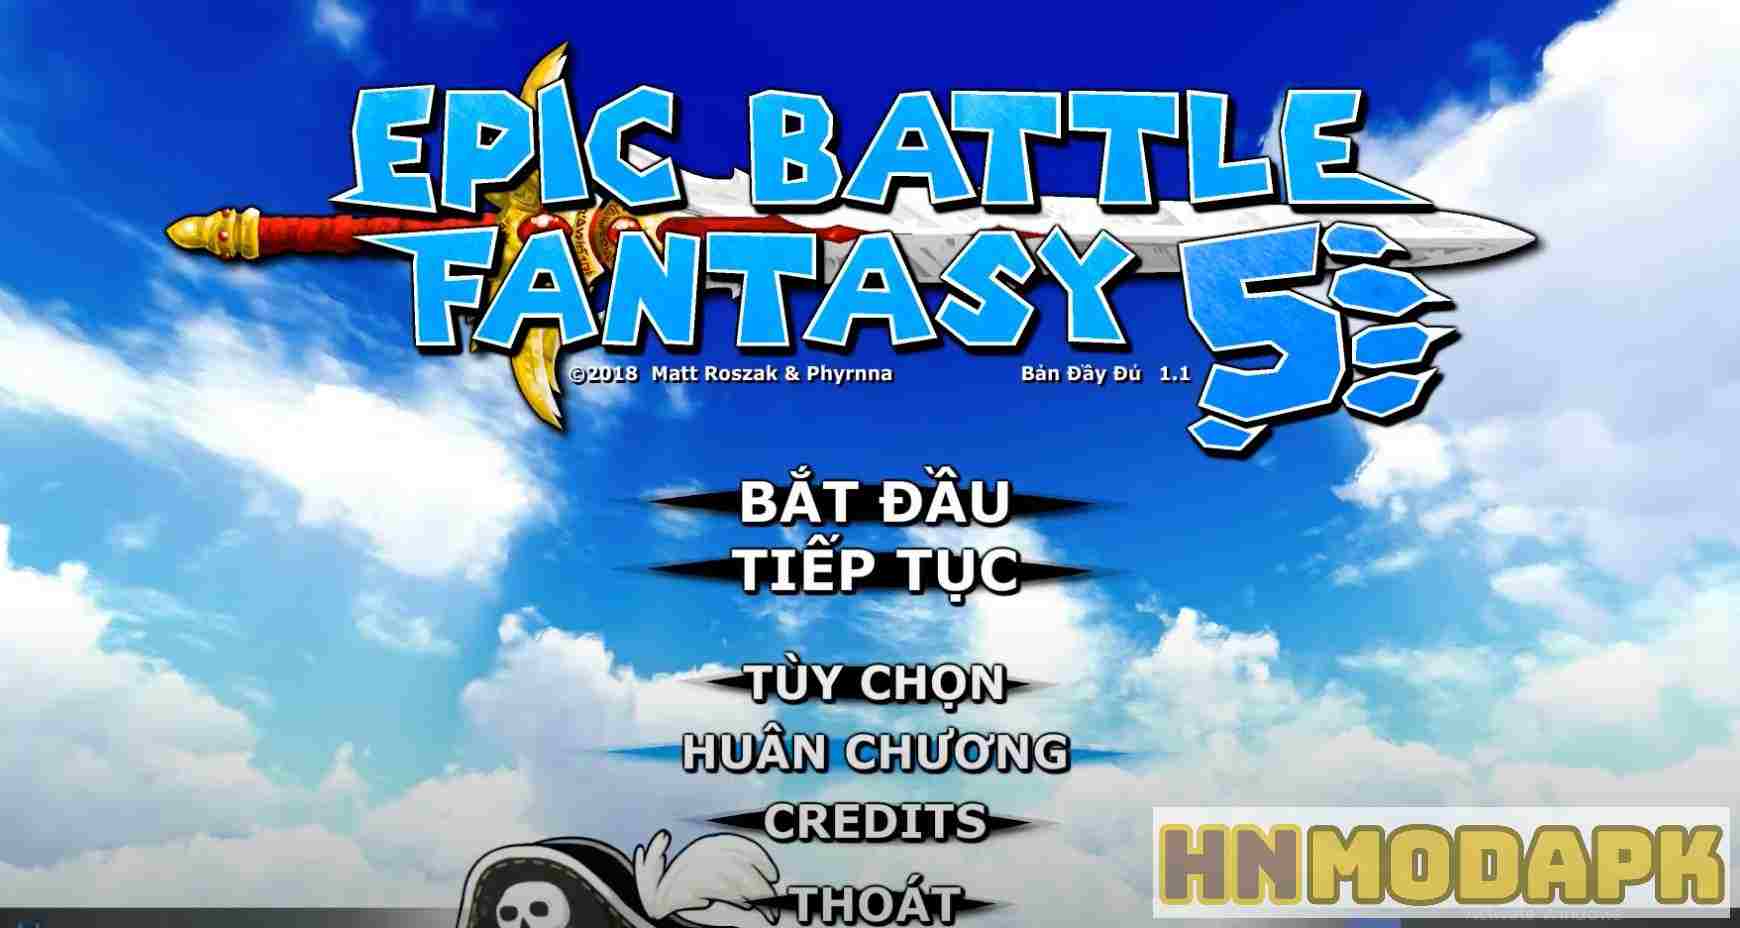 Epic Battle Fantasy 5 MOD (Menu Pro, Tiếng Việt, Full Nội Dung, Xoá ADS) APK 1.0.51